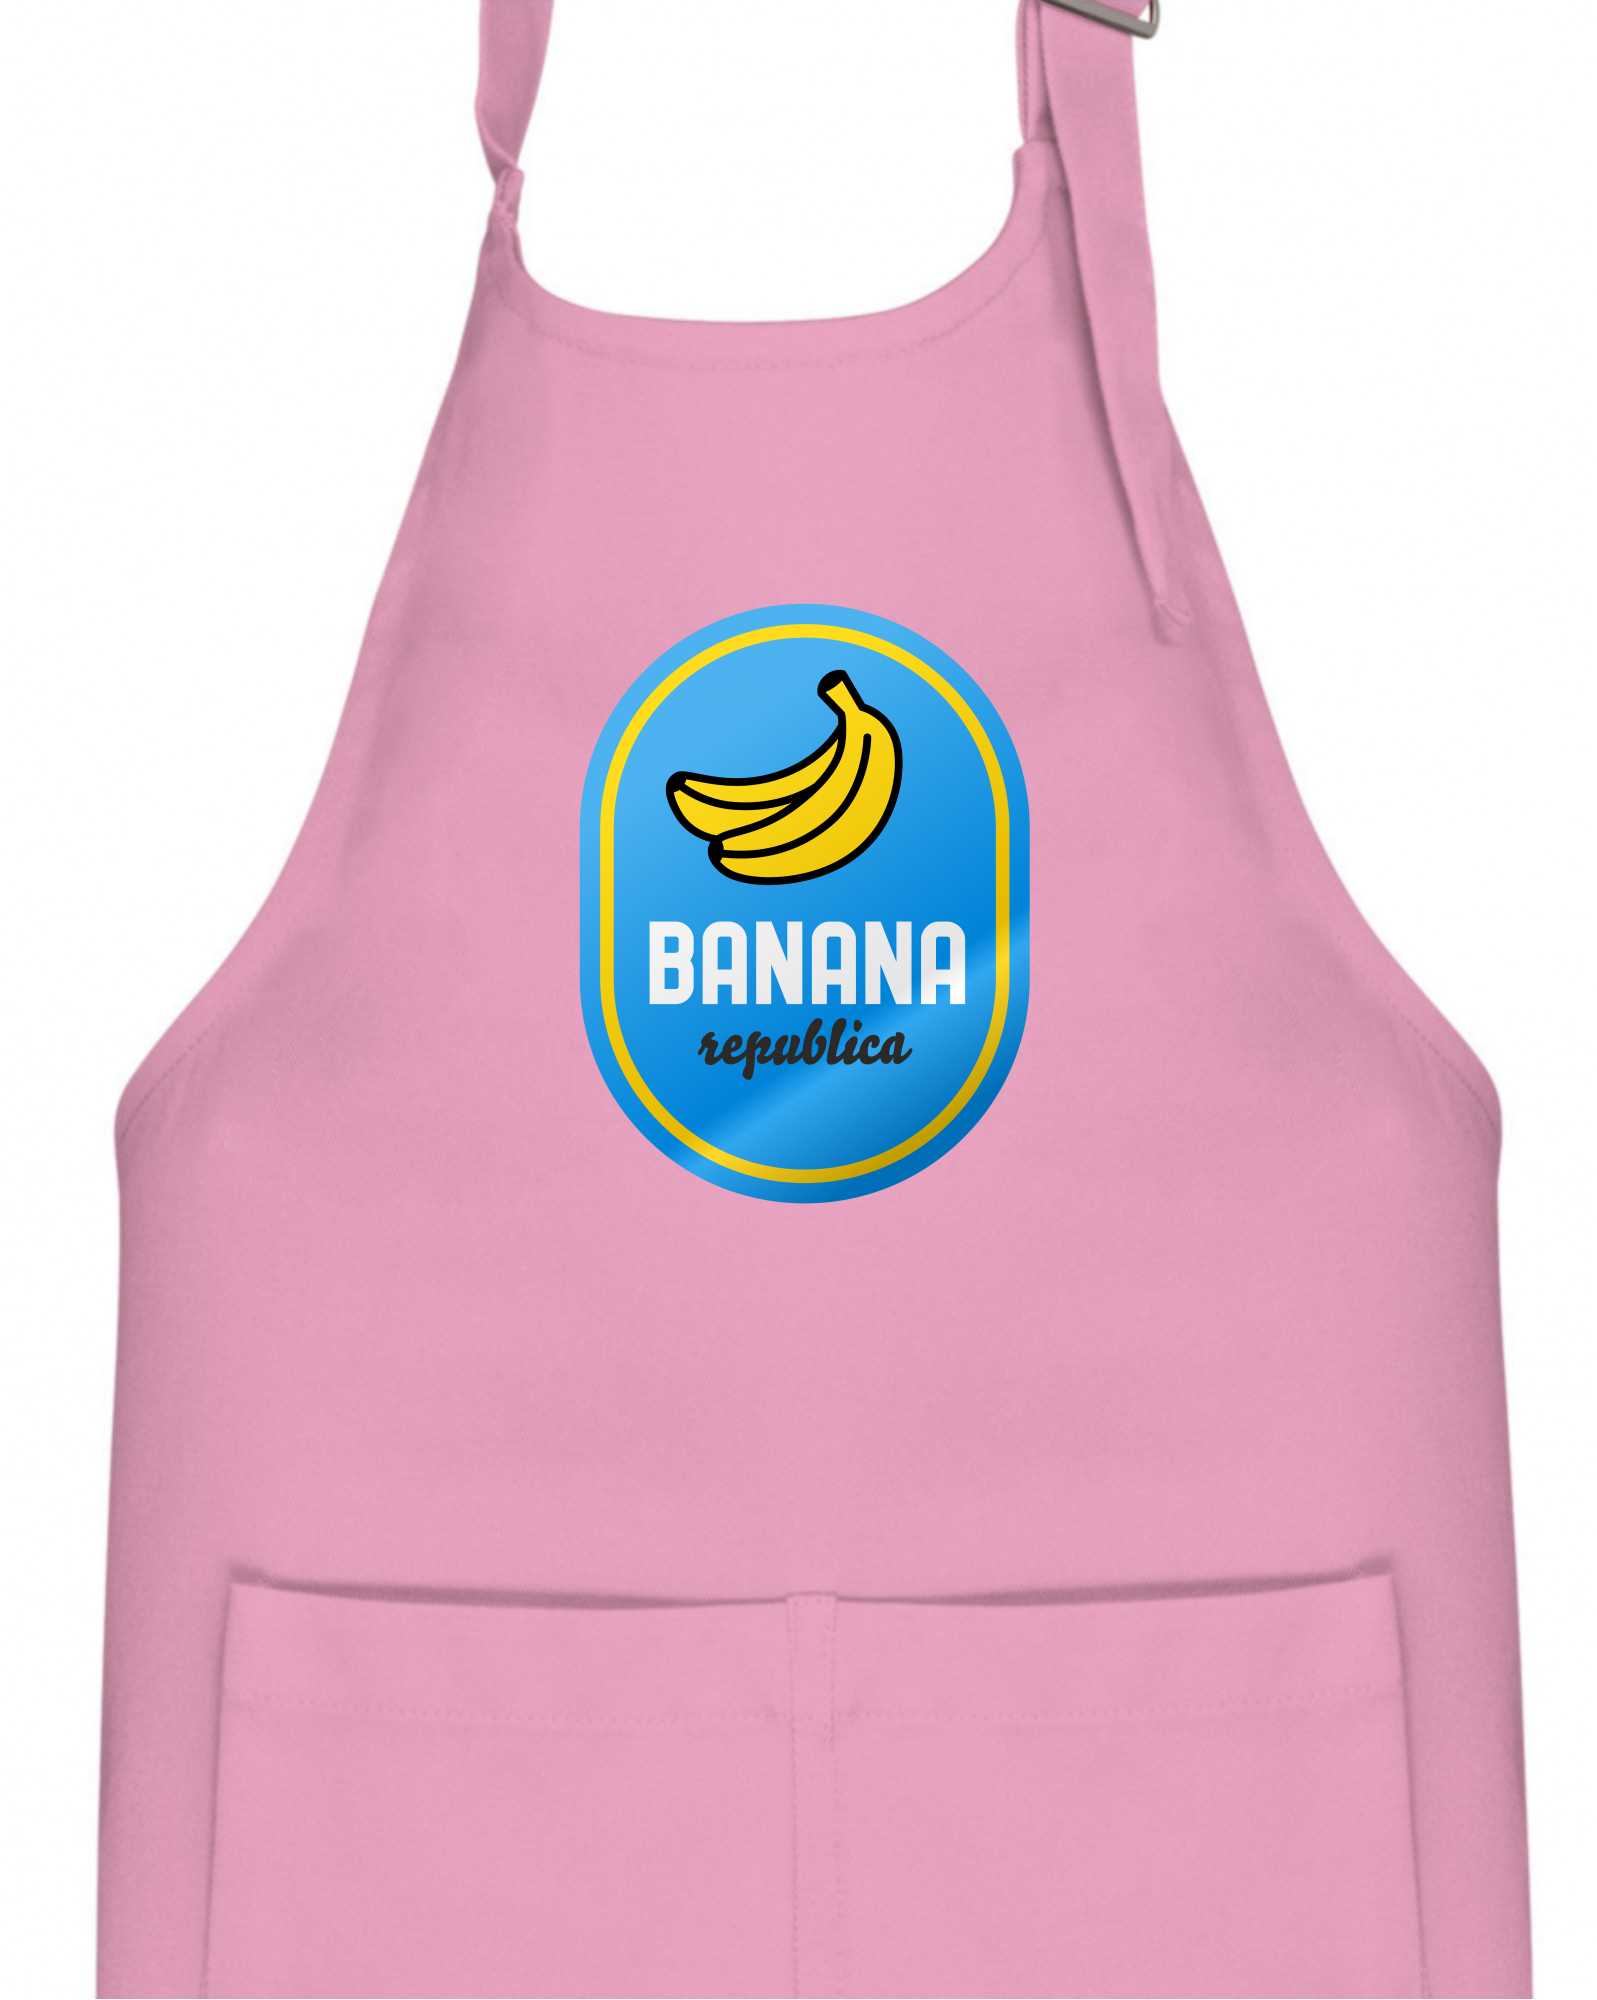 Banana republica - Dětská zástěra na vaření